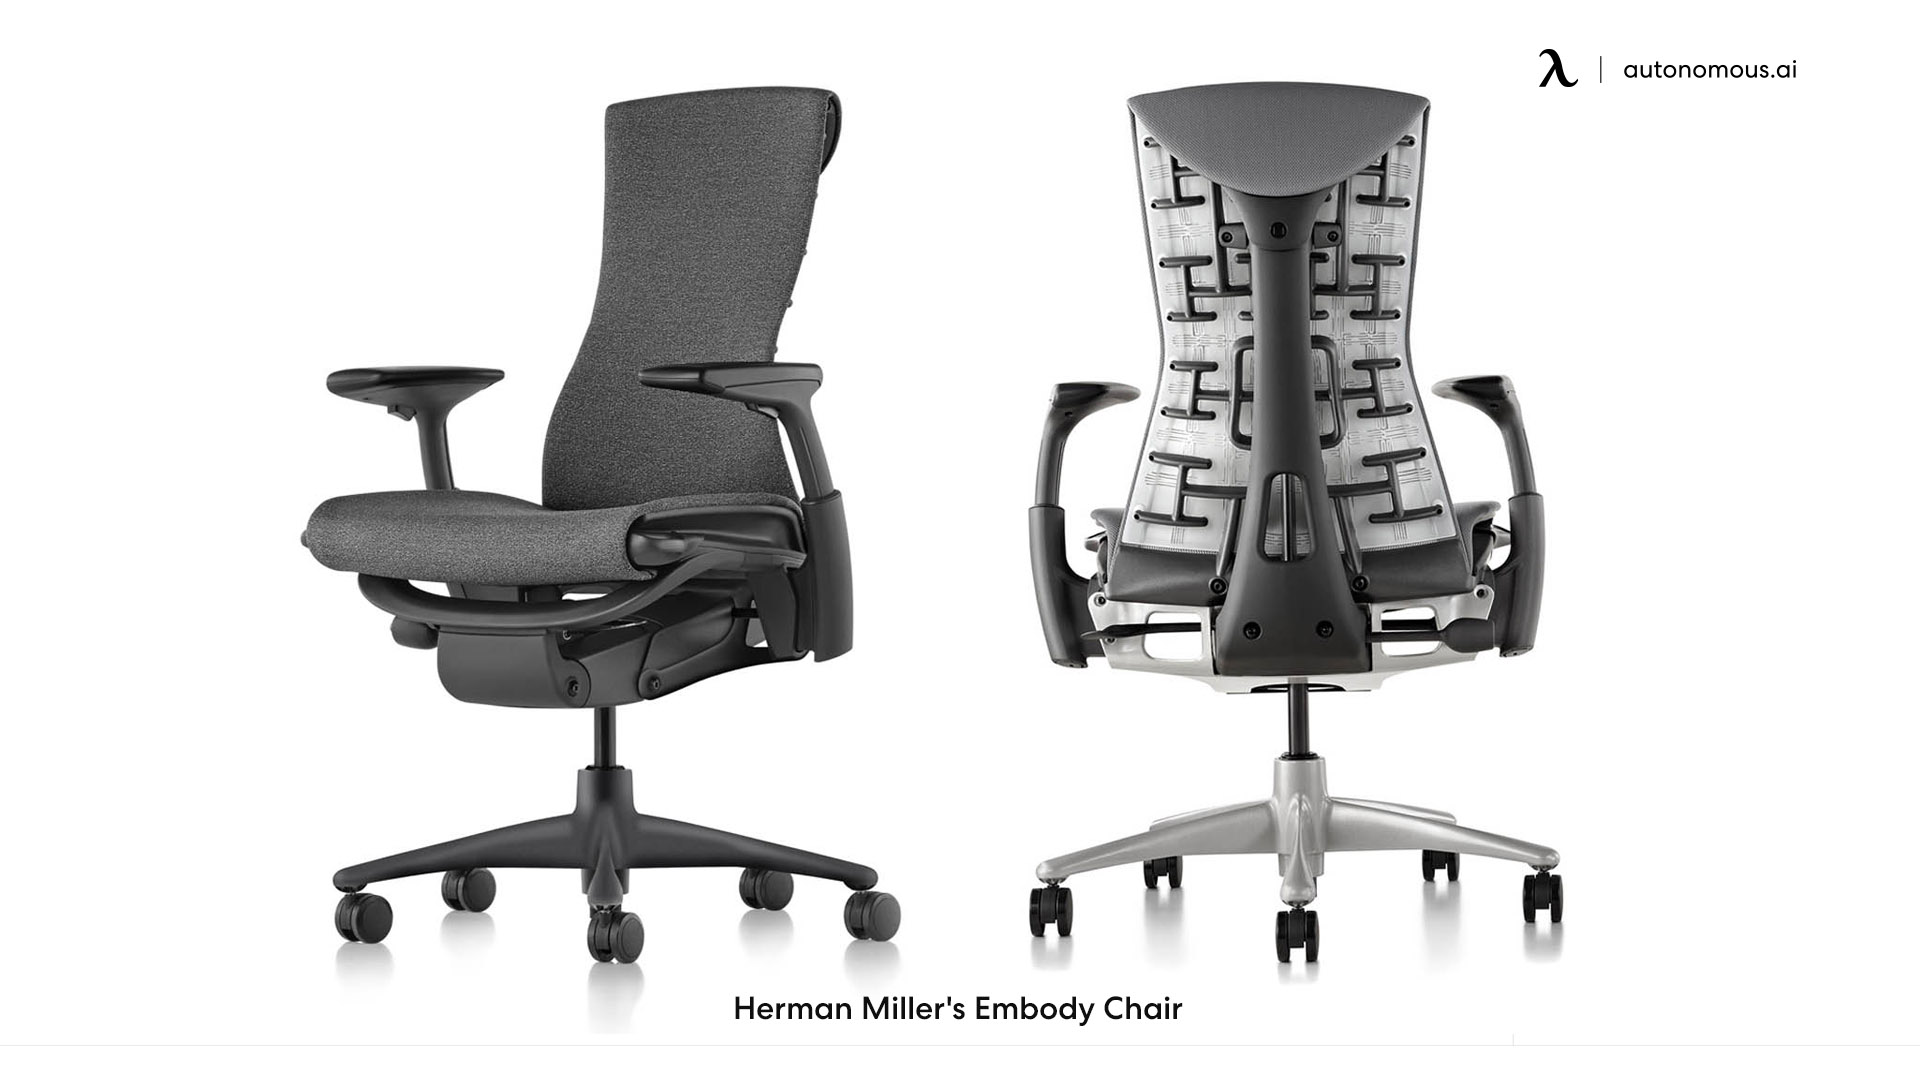 Herman Miller's Embody plush office chair